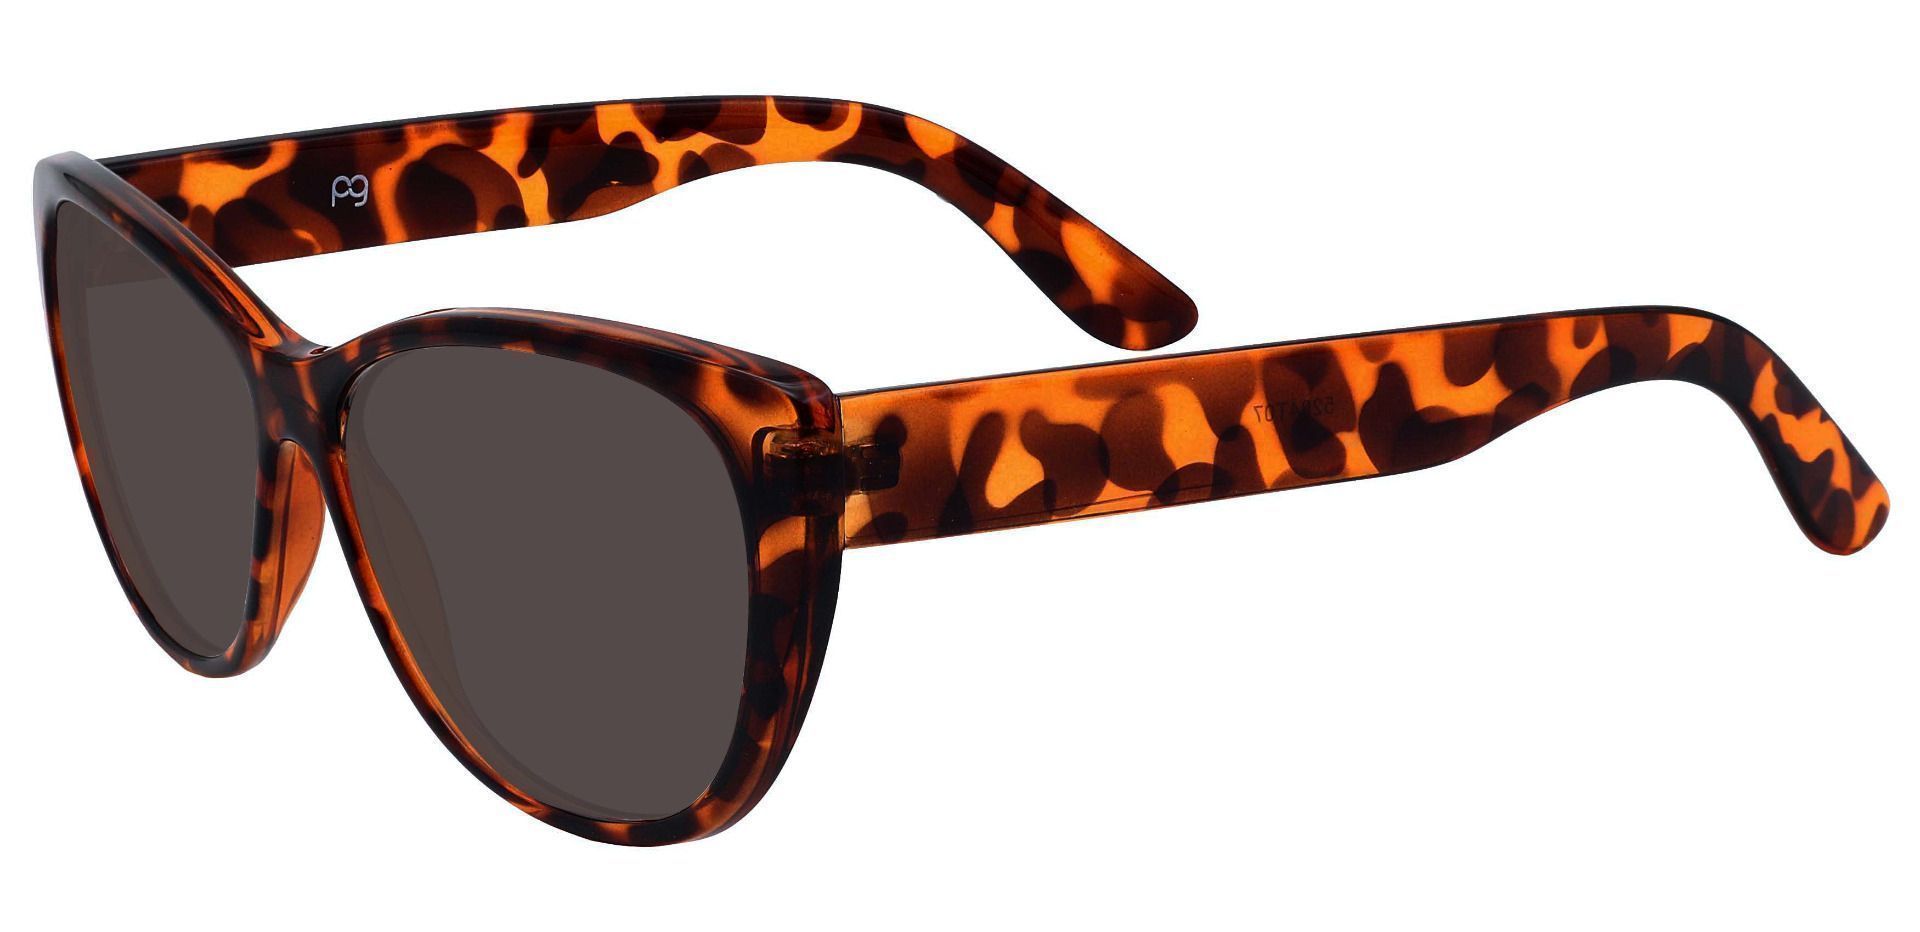 Lynn Cat-Eye Reading Sunglasses - Tortoise Frame With Gray Lenses